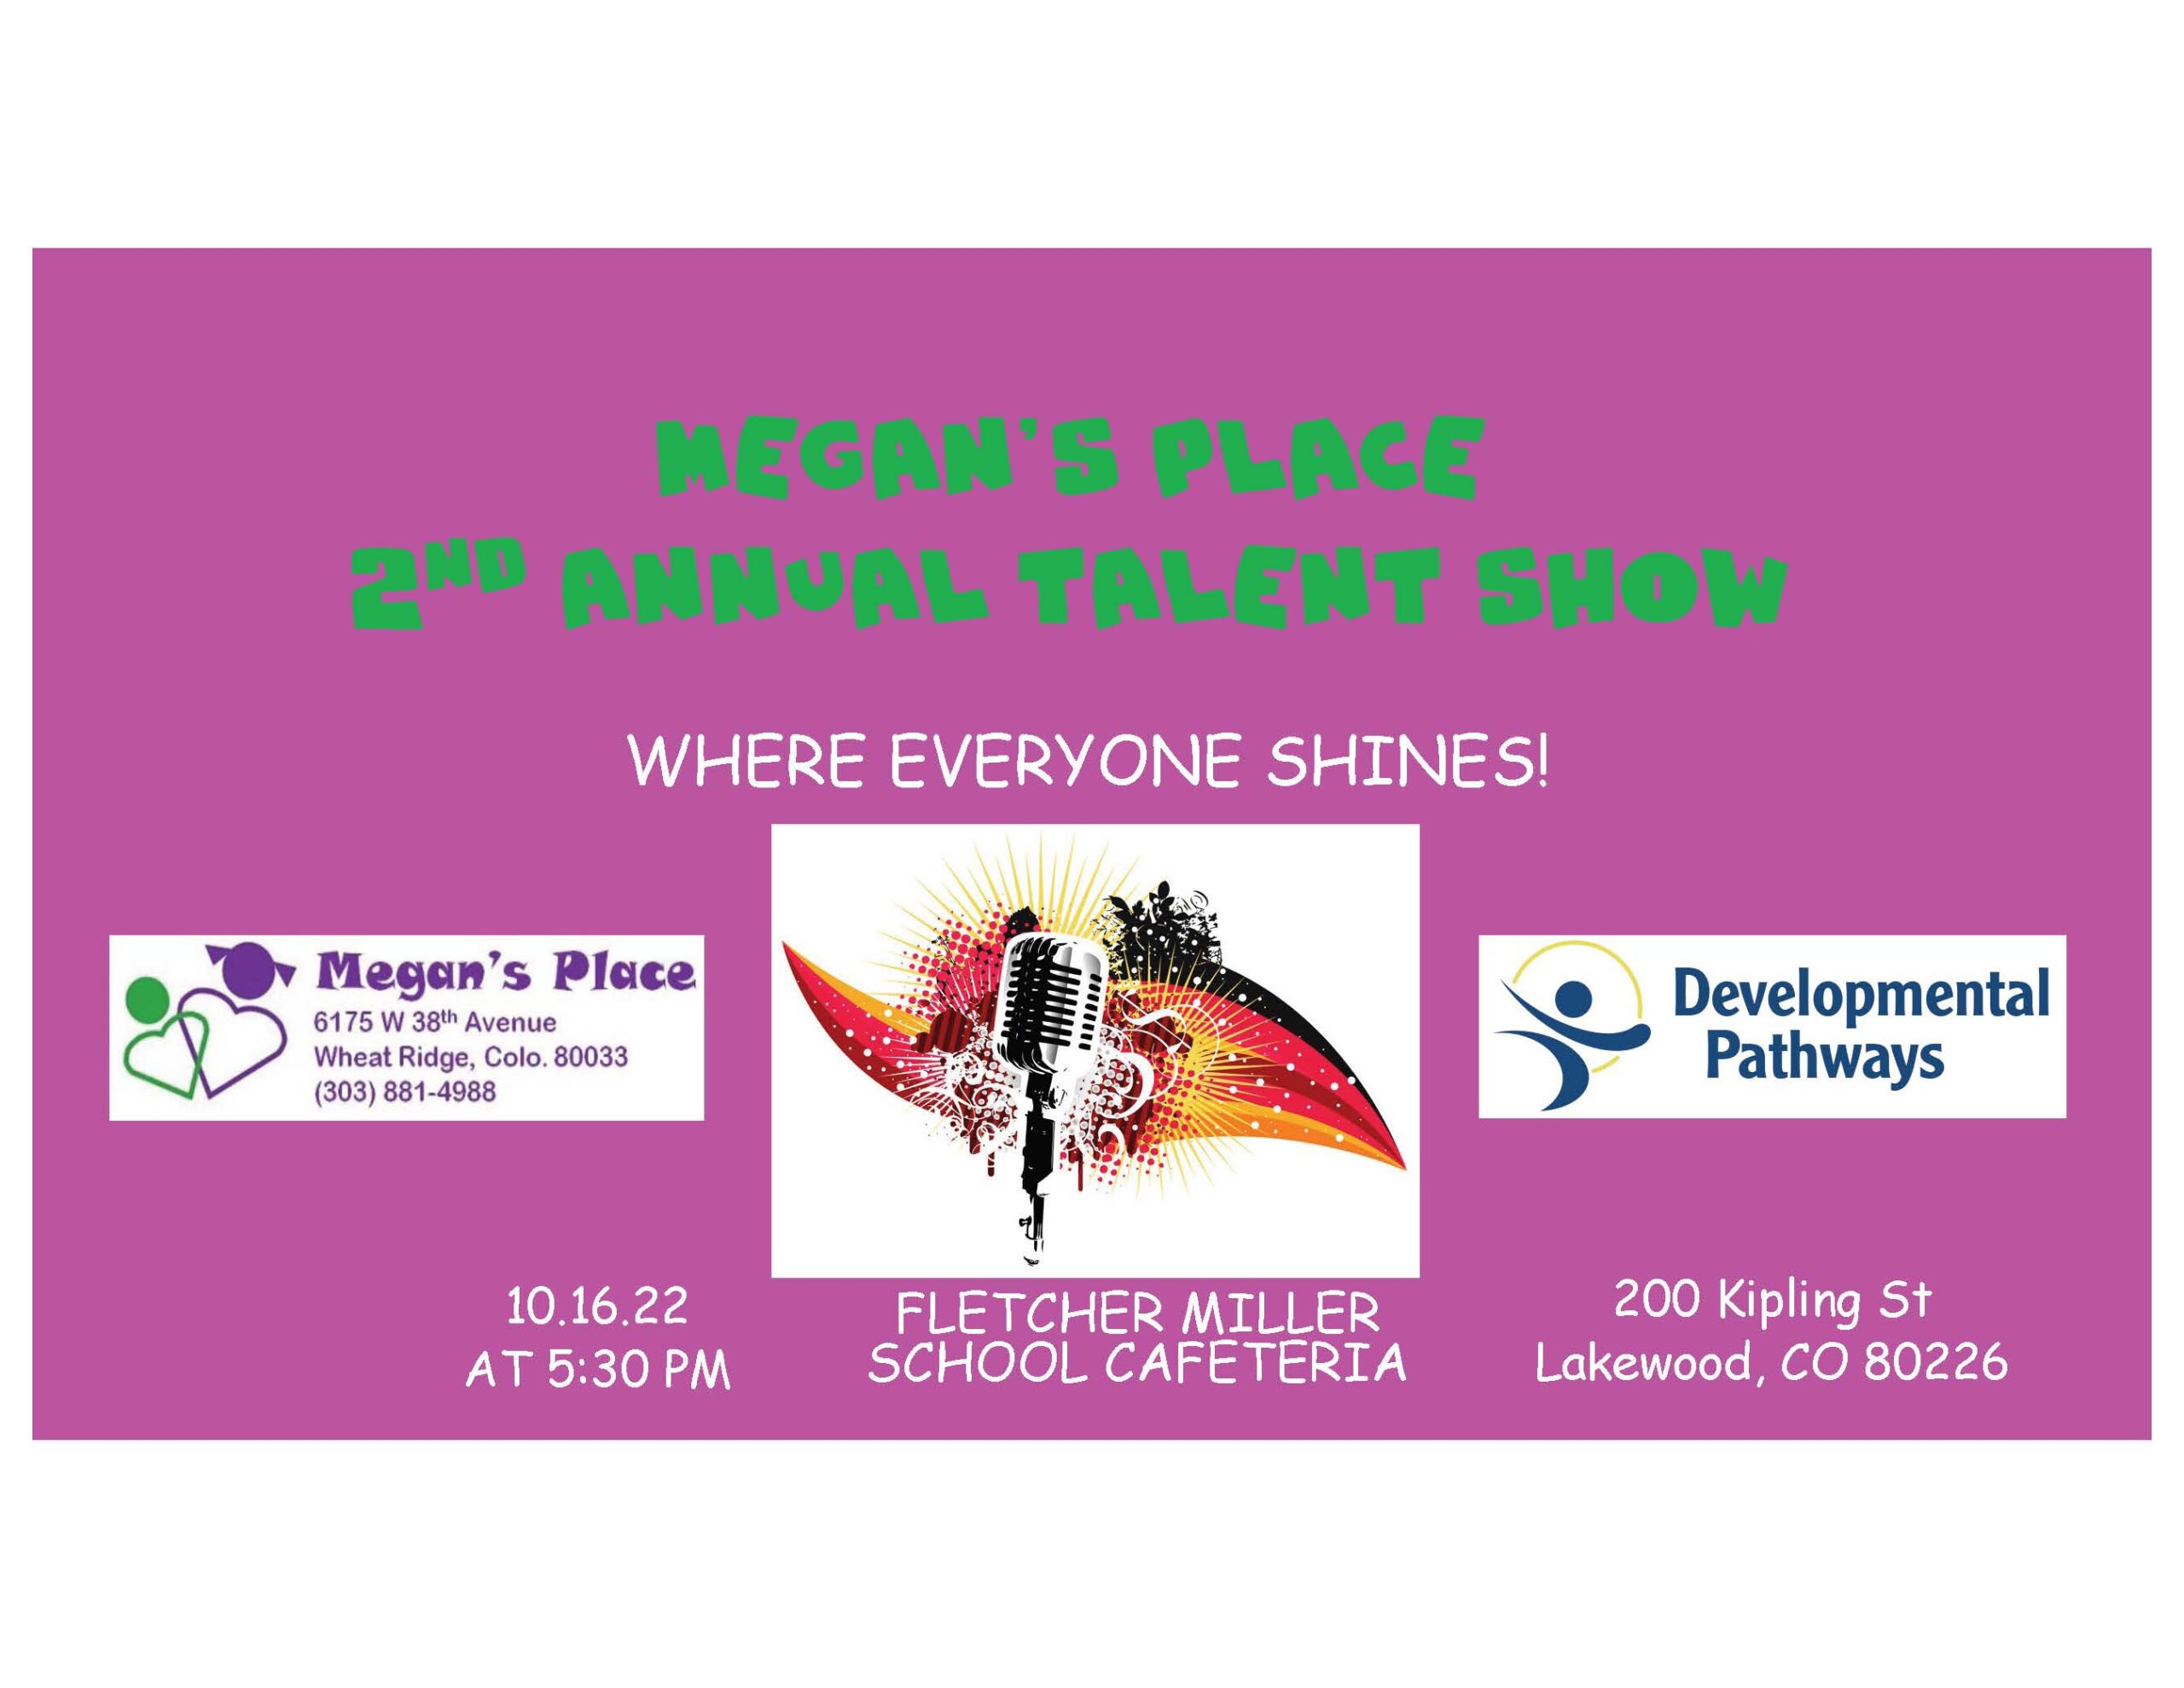 Megan's Place talent show flyer